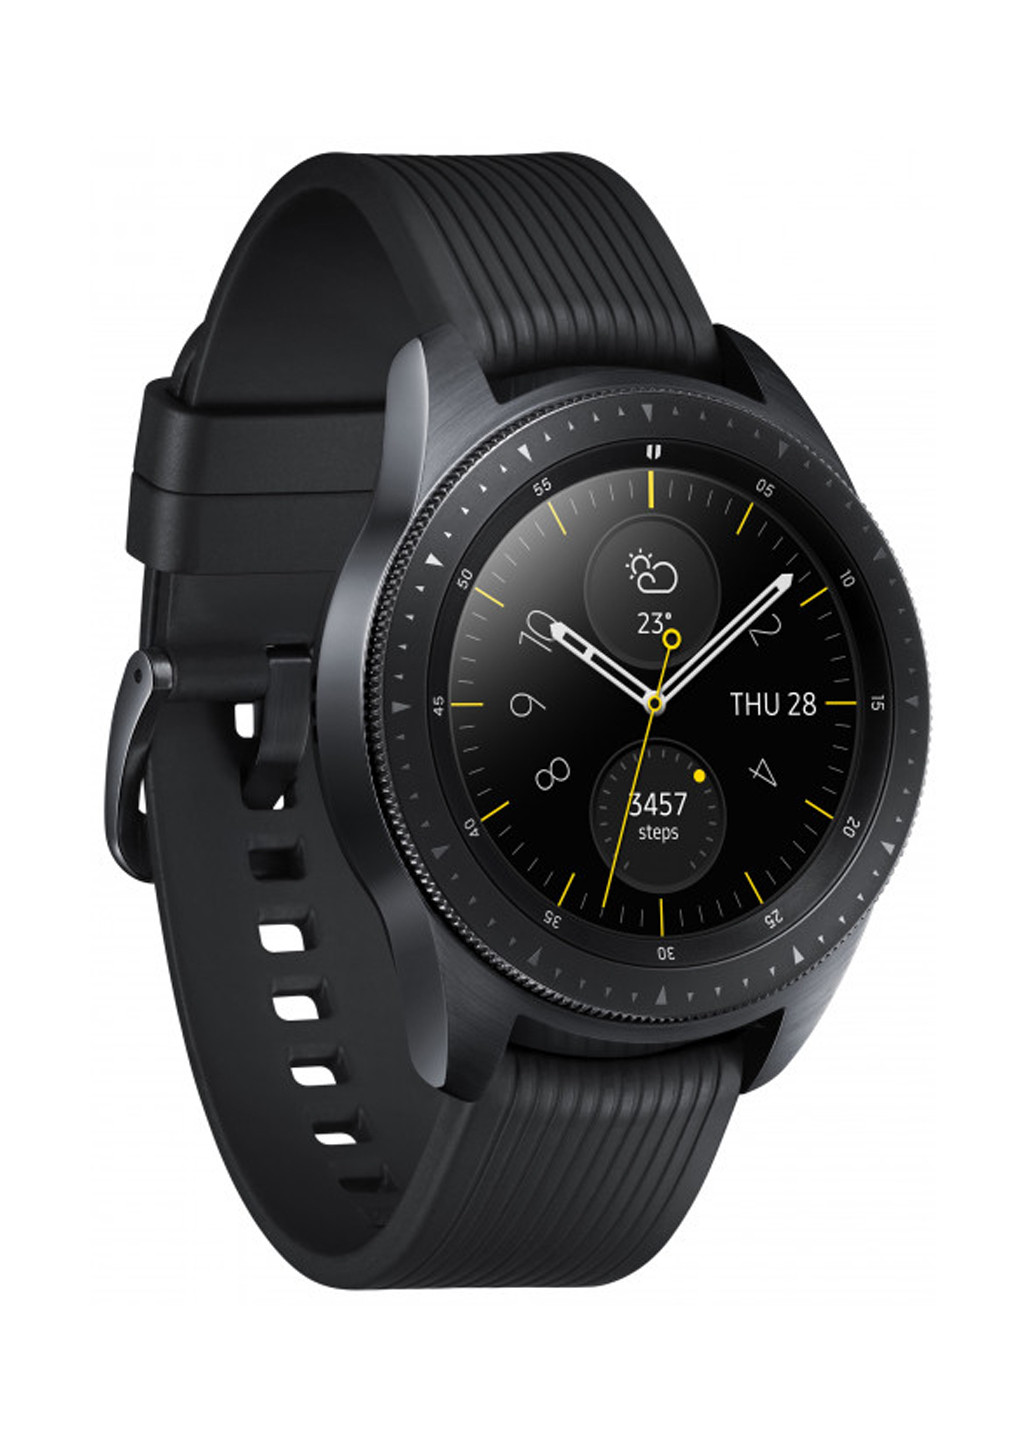 Смарт-часы Galaxy Watch 42mm (SM-R810) BLACK Samsung Samsung Galaxy Watch 42mm (SM-R810) BLACK чёрные